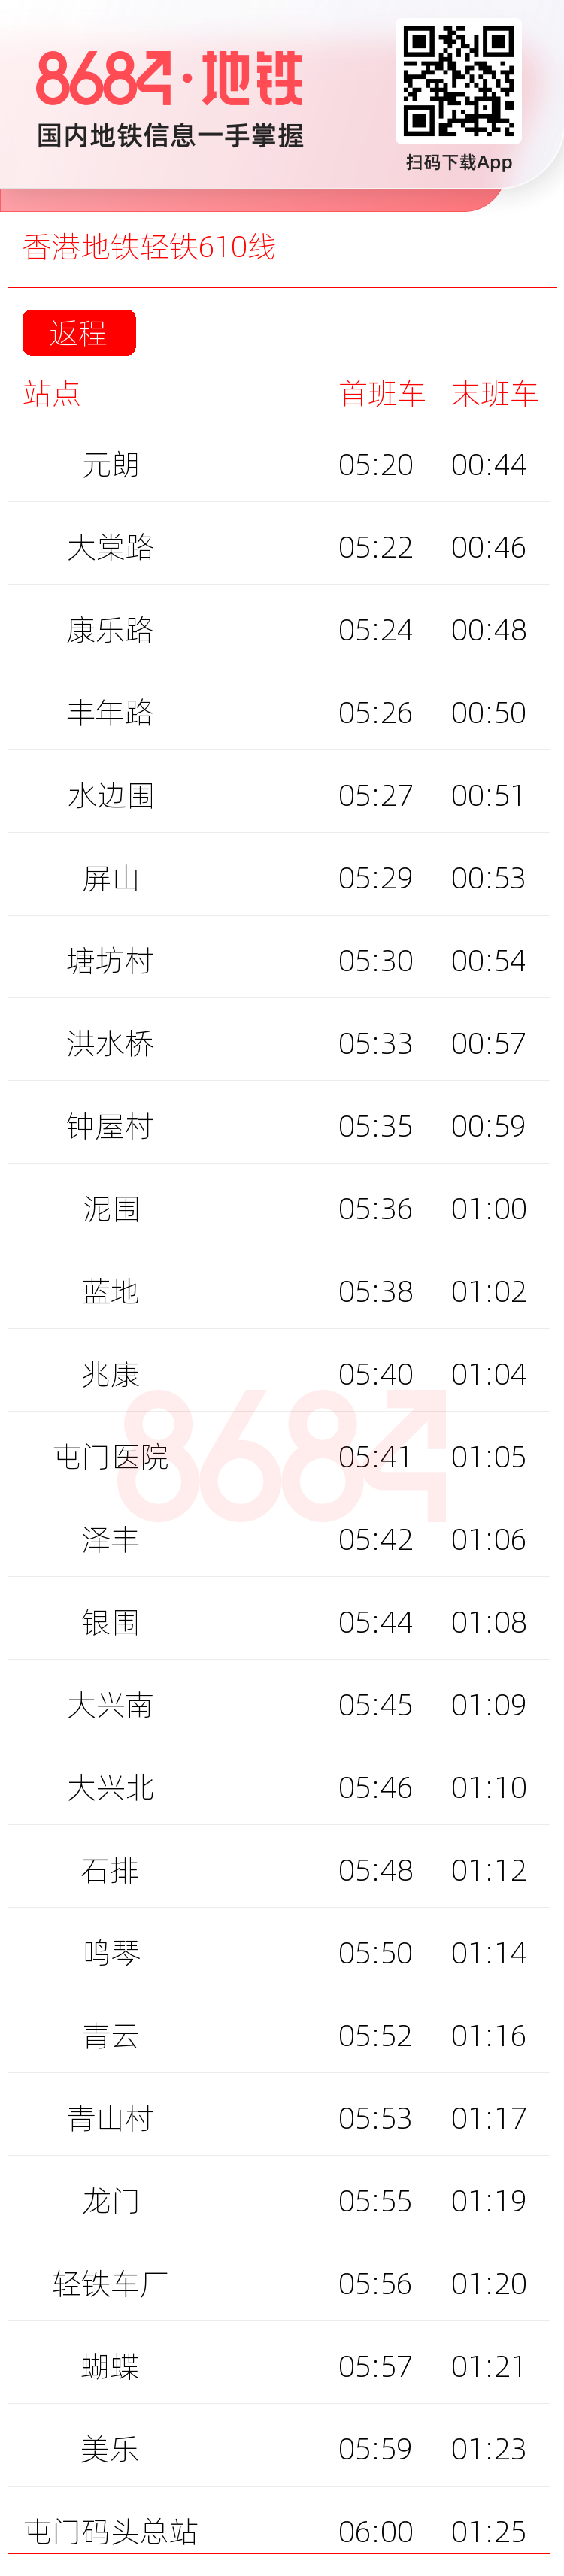 香港地铁轻铁610线运营时间表